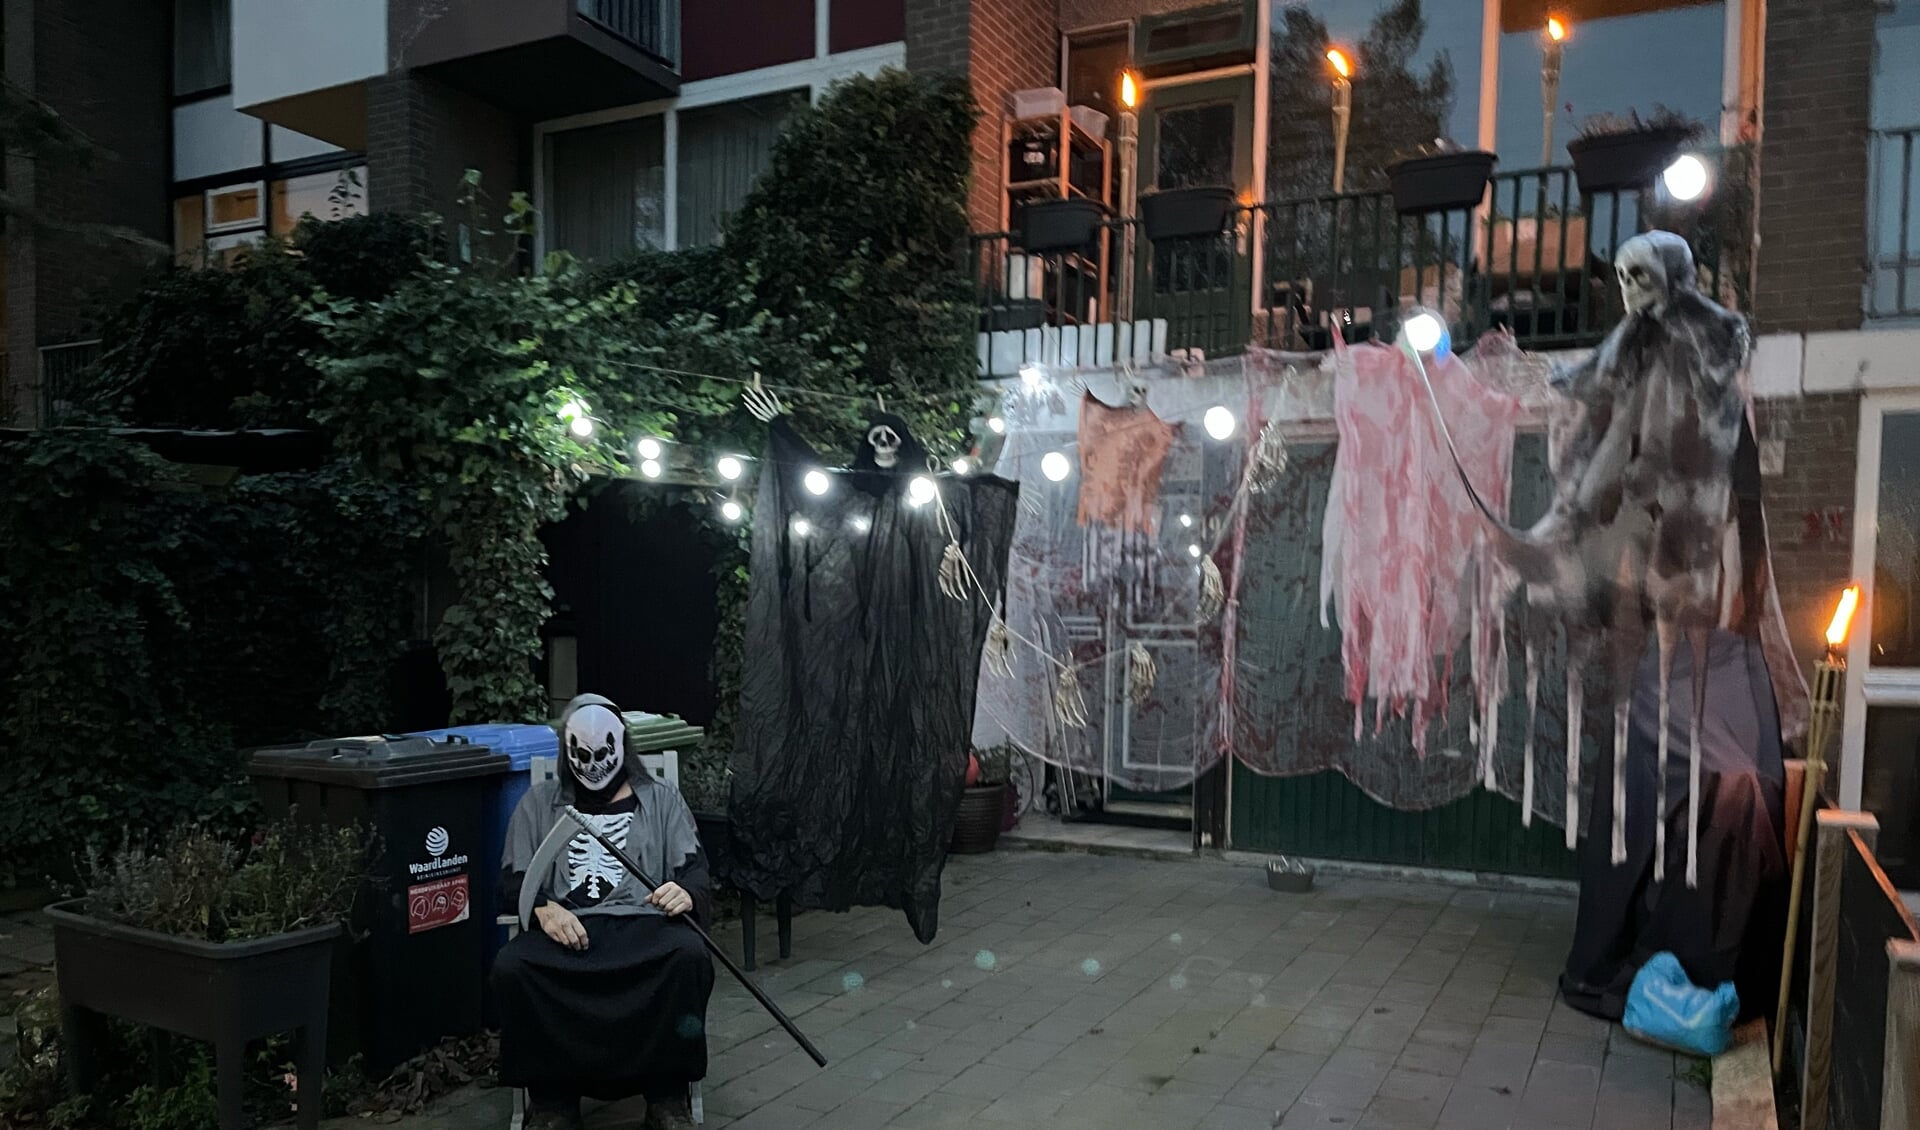 Voor het tweede jaar werd met succes een Halloweentocht georganiseerd door Stichting Wijdschild.nl